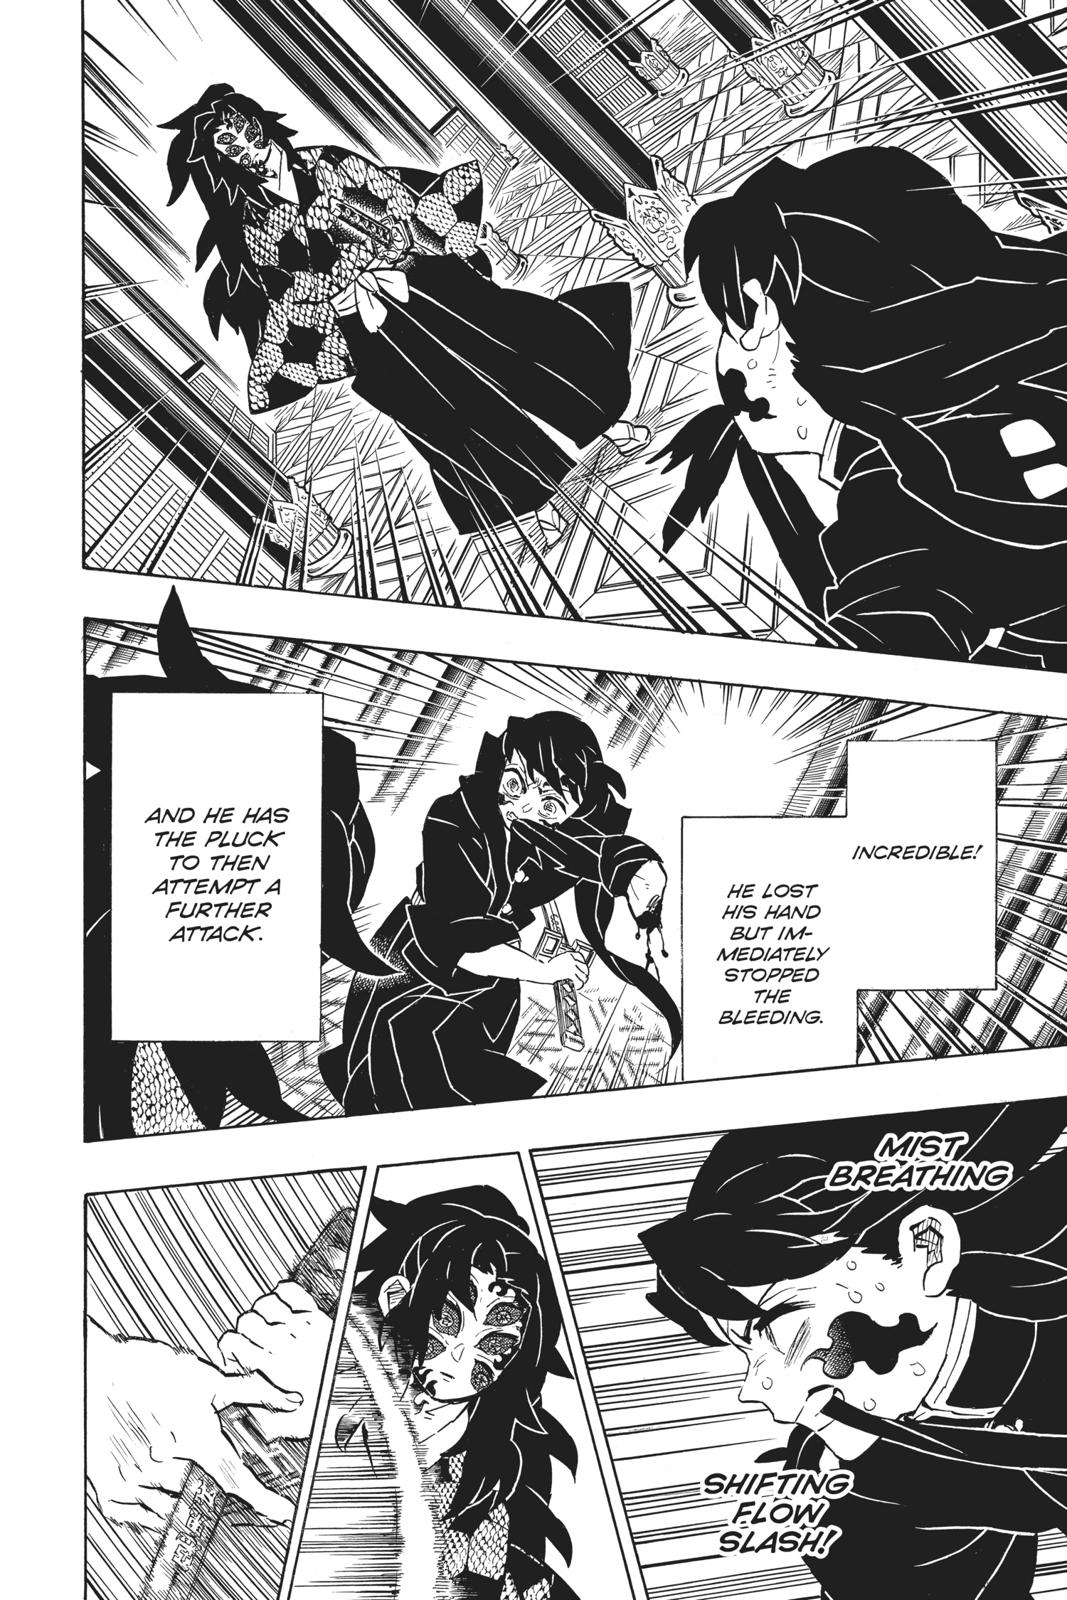 Demon Slayer Manga Manga Chapter - 165 - image 10